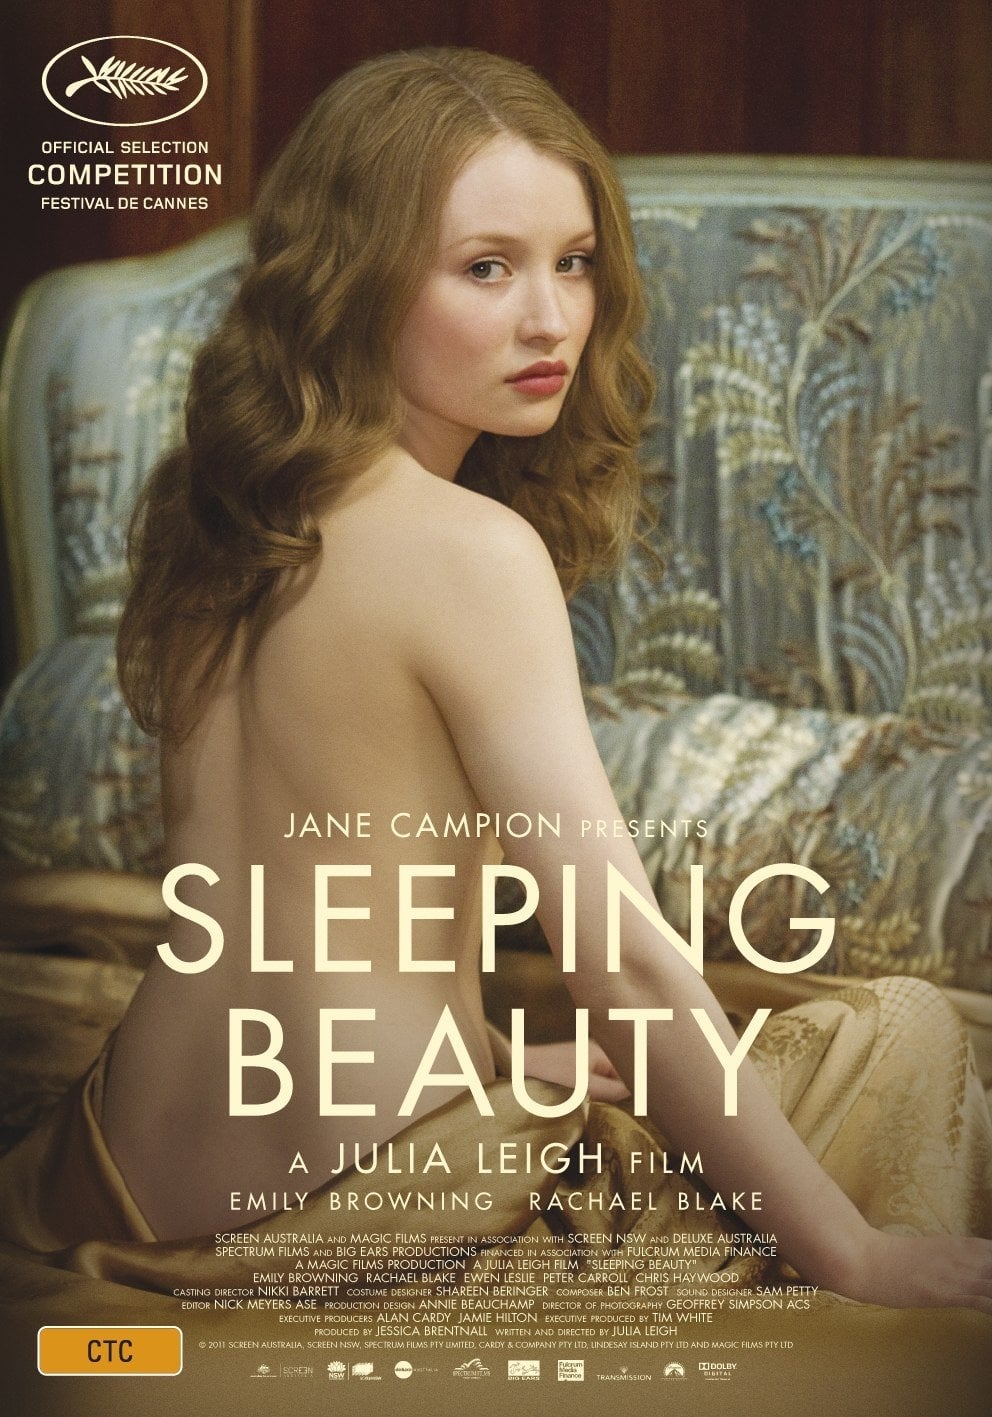 EN - Sleeping Beauty (2011)